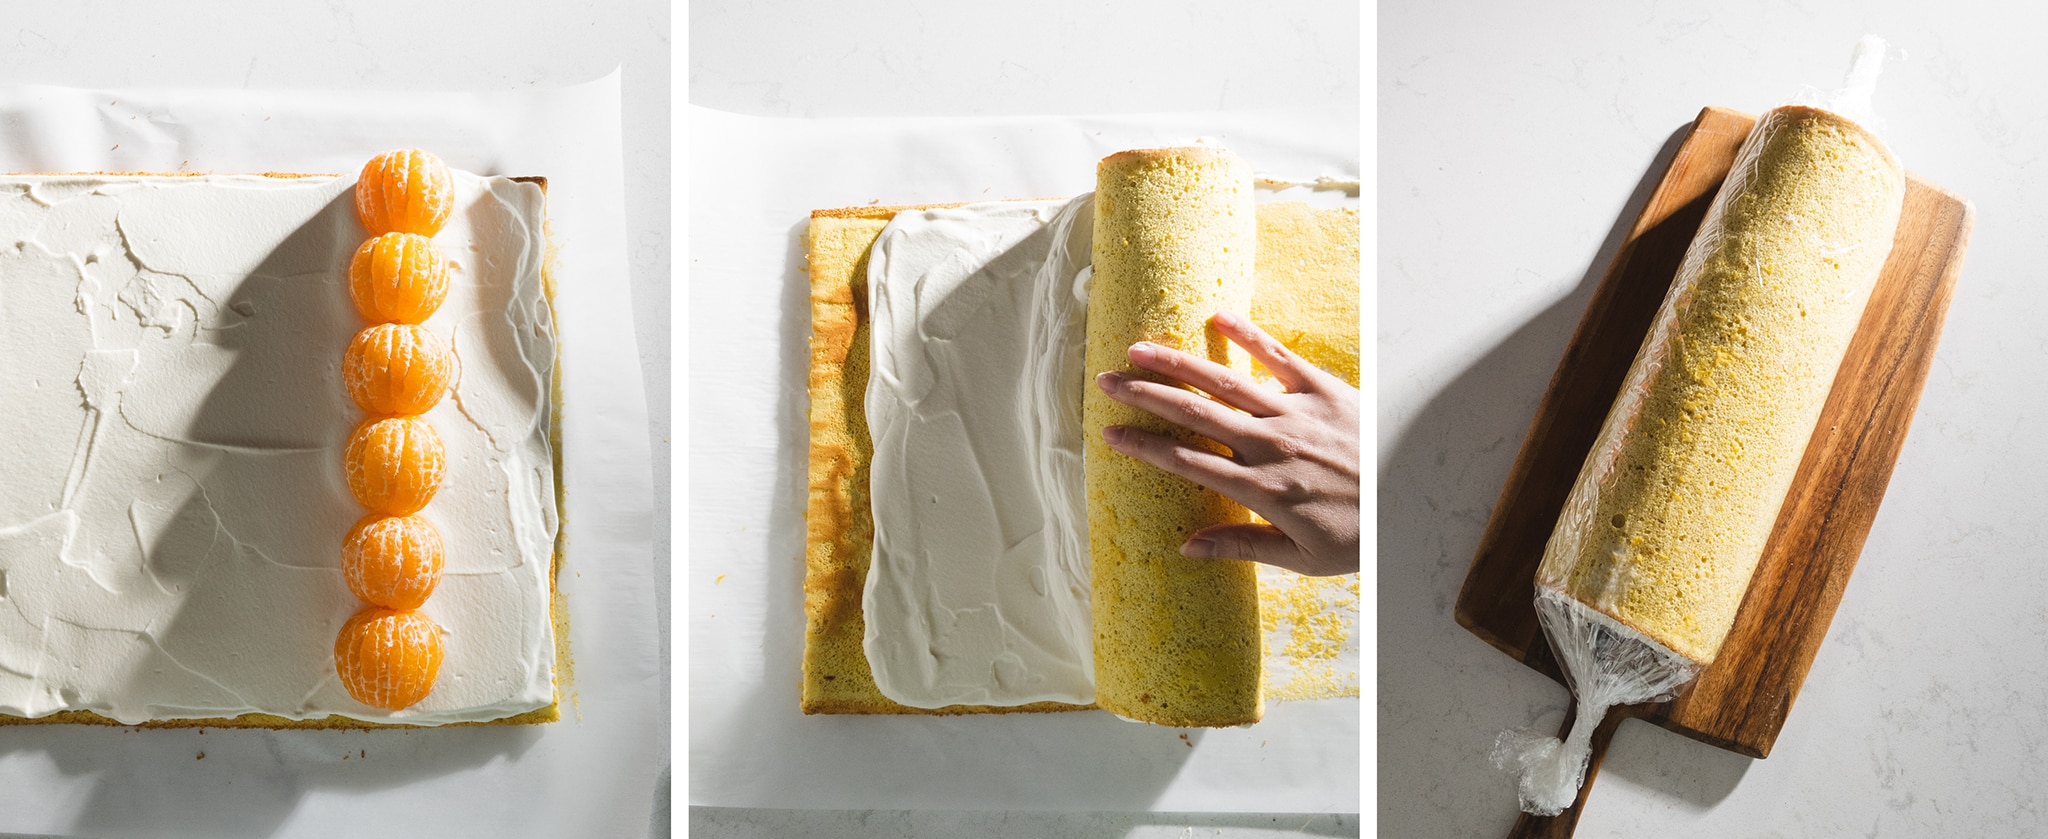 rolling up orange sponge cake into a swiss roll